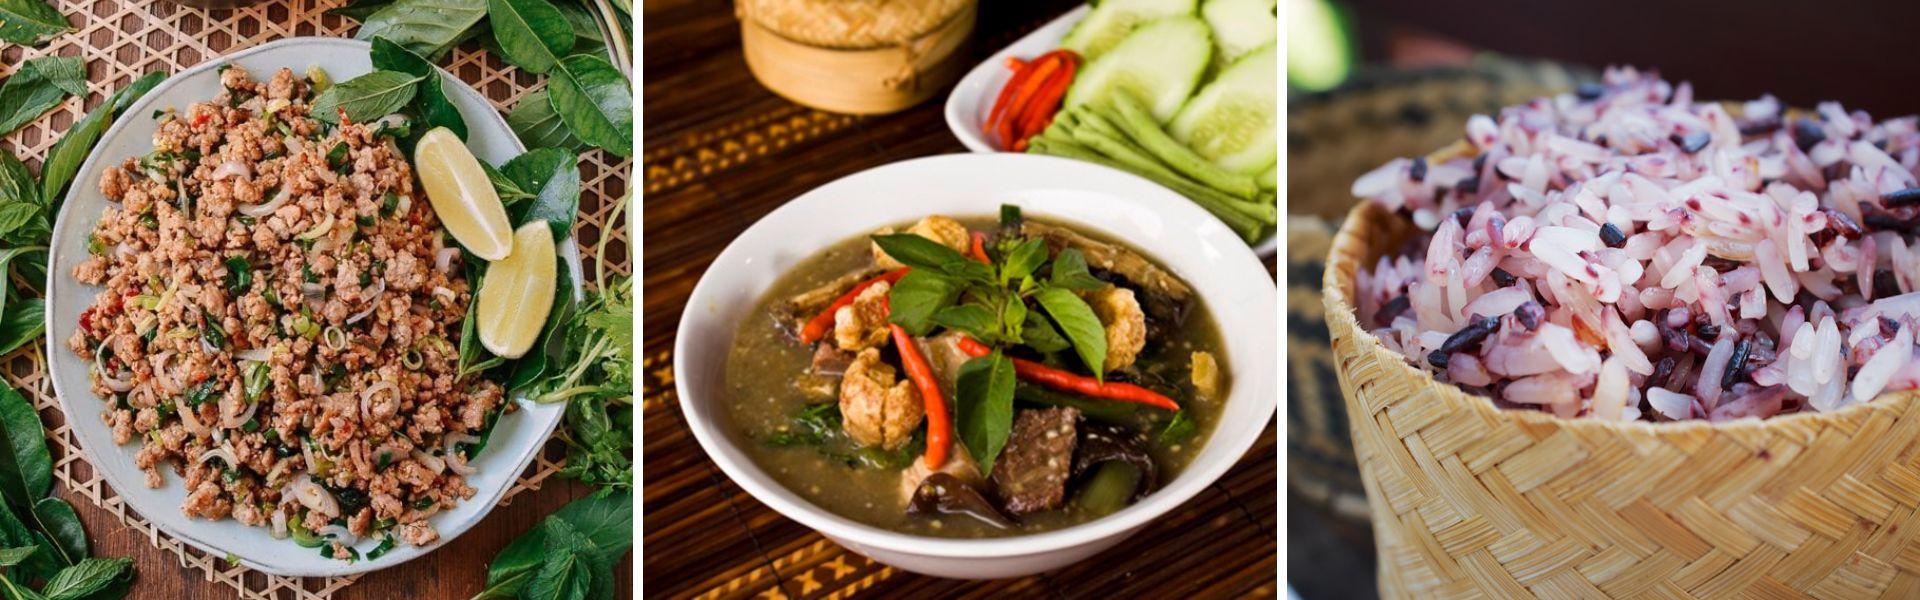 Cuisine laotienne